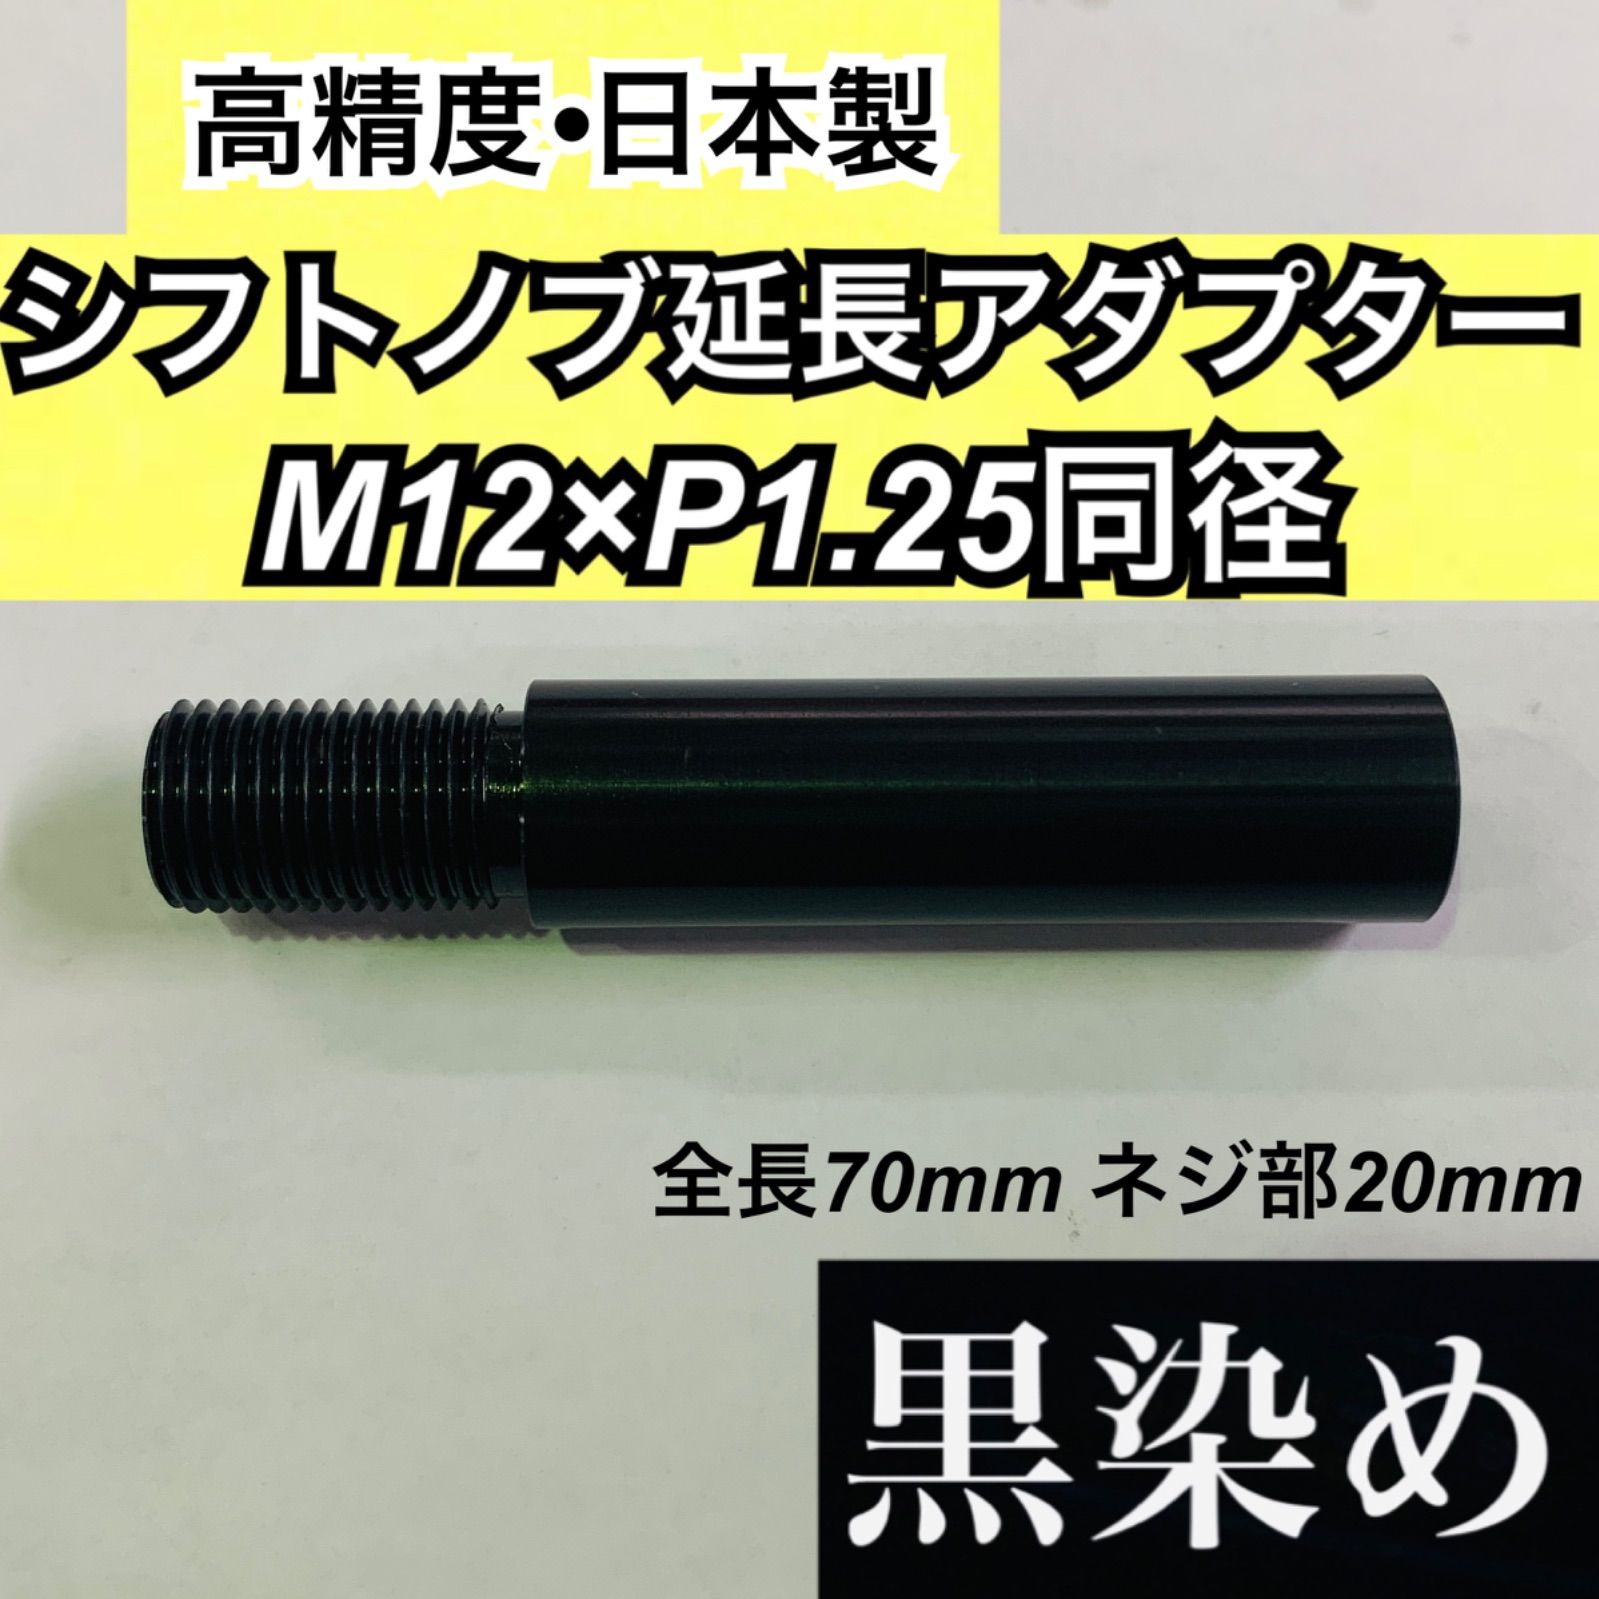 M12×P1.25同径 シフトノブ延長アダプター 黒染 全長70ミリ 日本製 人気ブラドン - パーツ